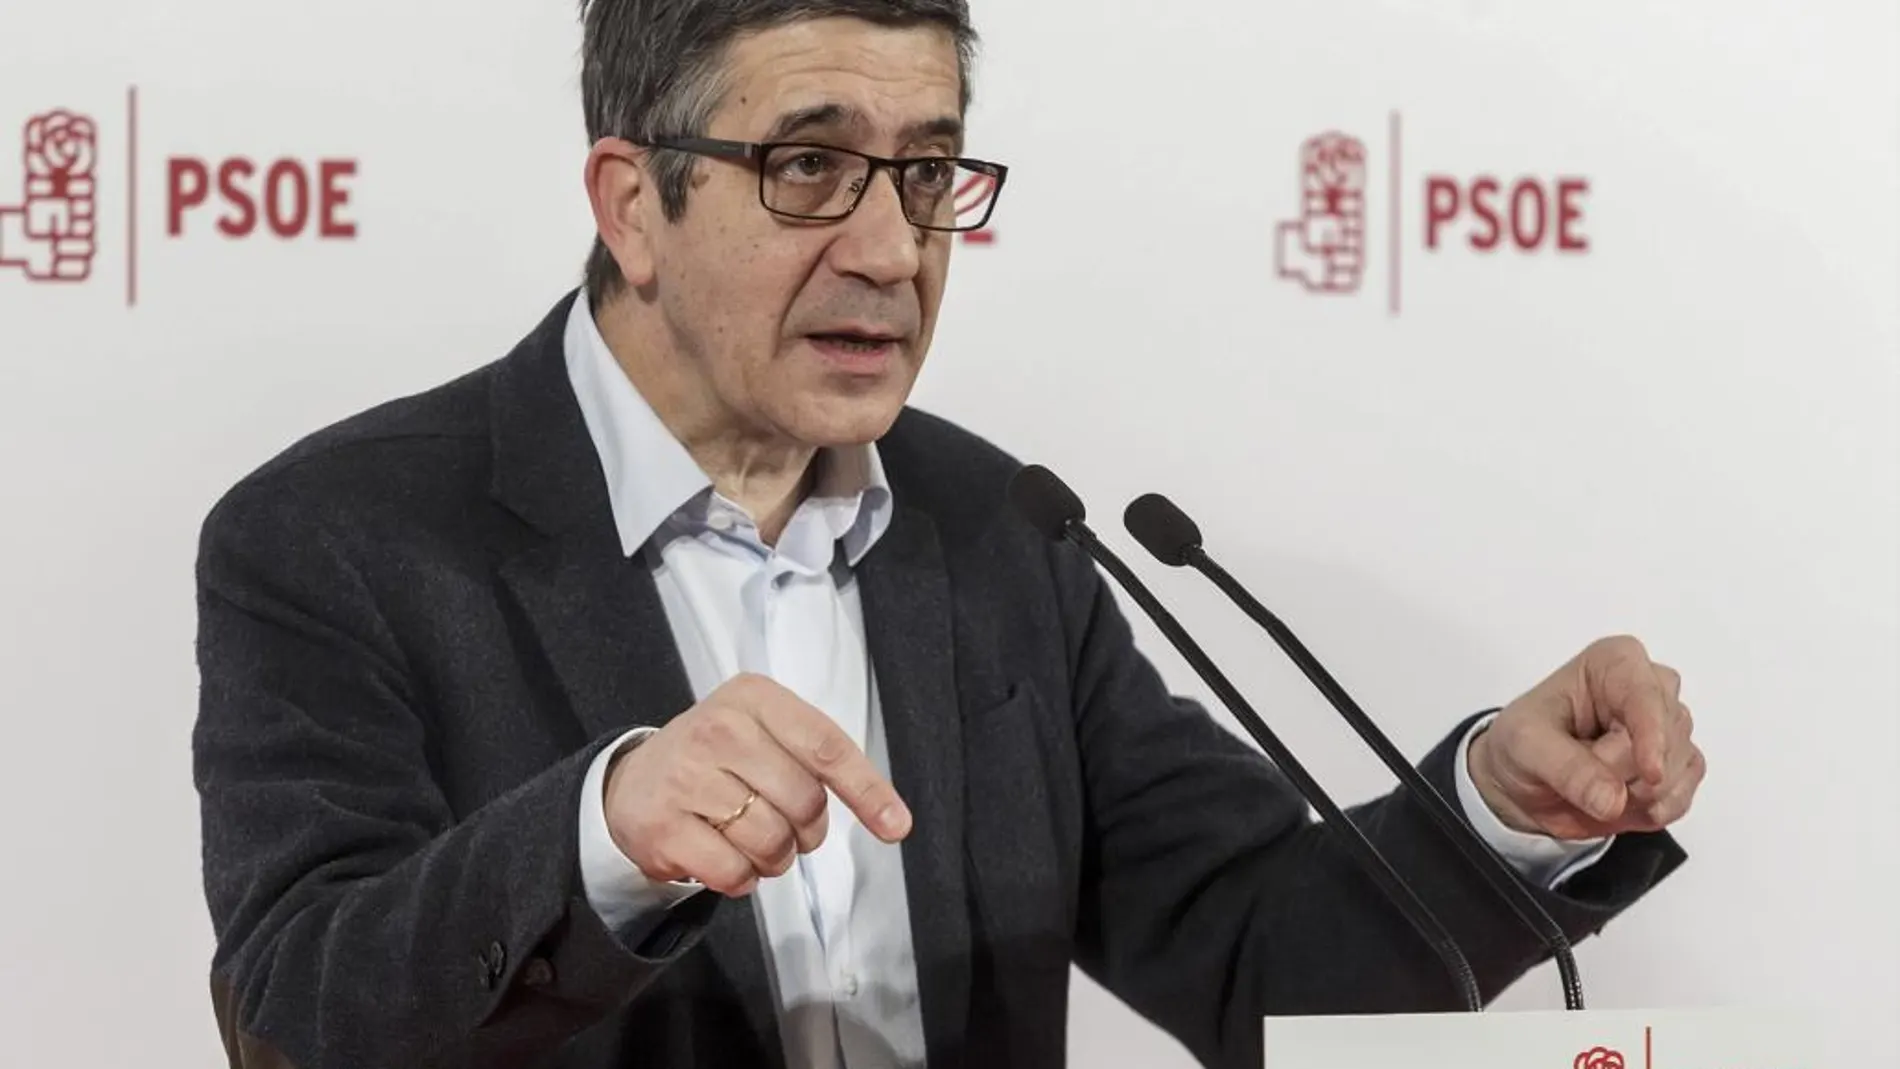 El exlehendakari Patxi López, uno de los aspirantes a liderar el PSOE, durante su participación hoy en un acto con militantes del partido en Burgos.